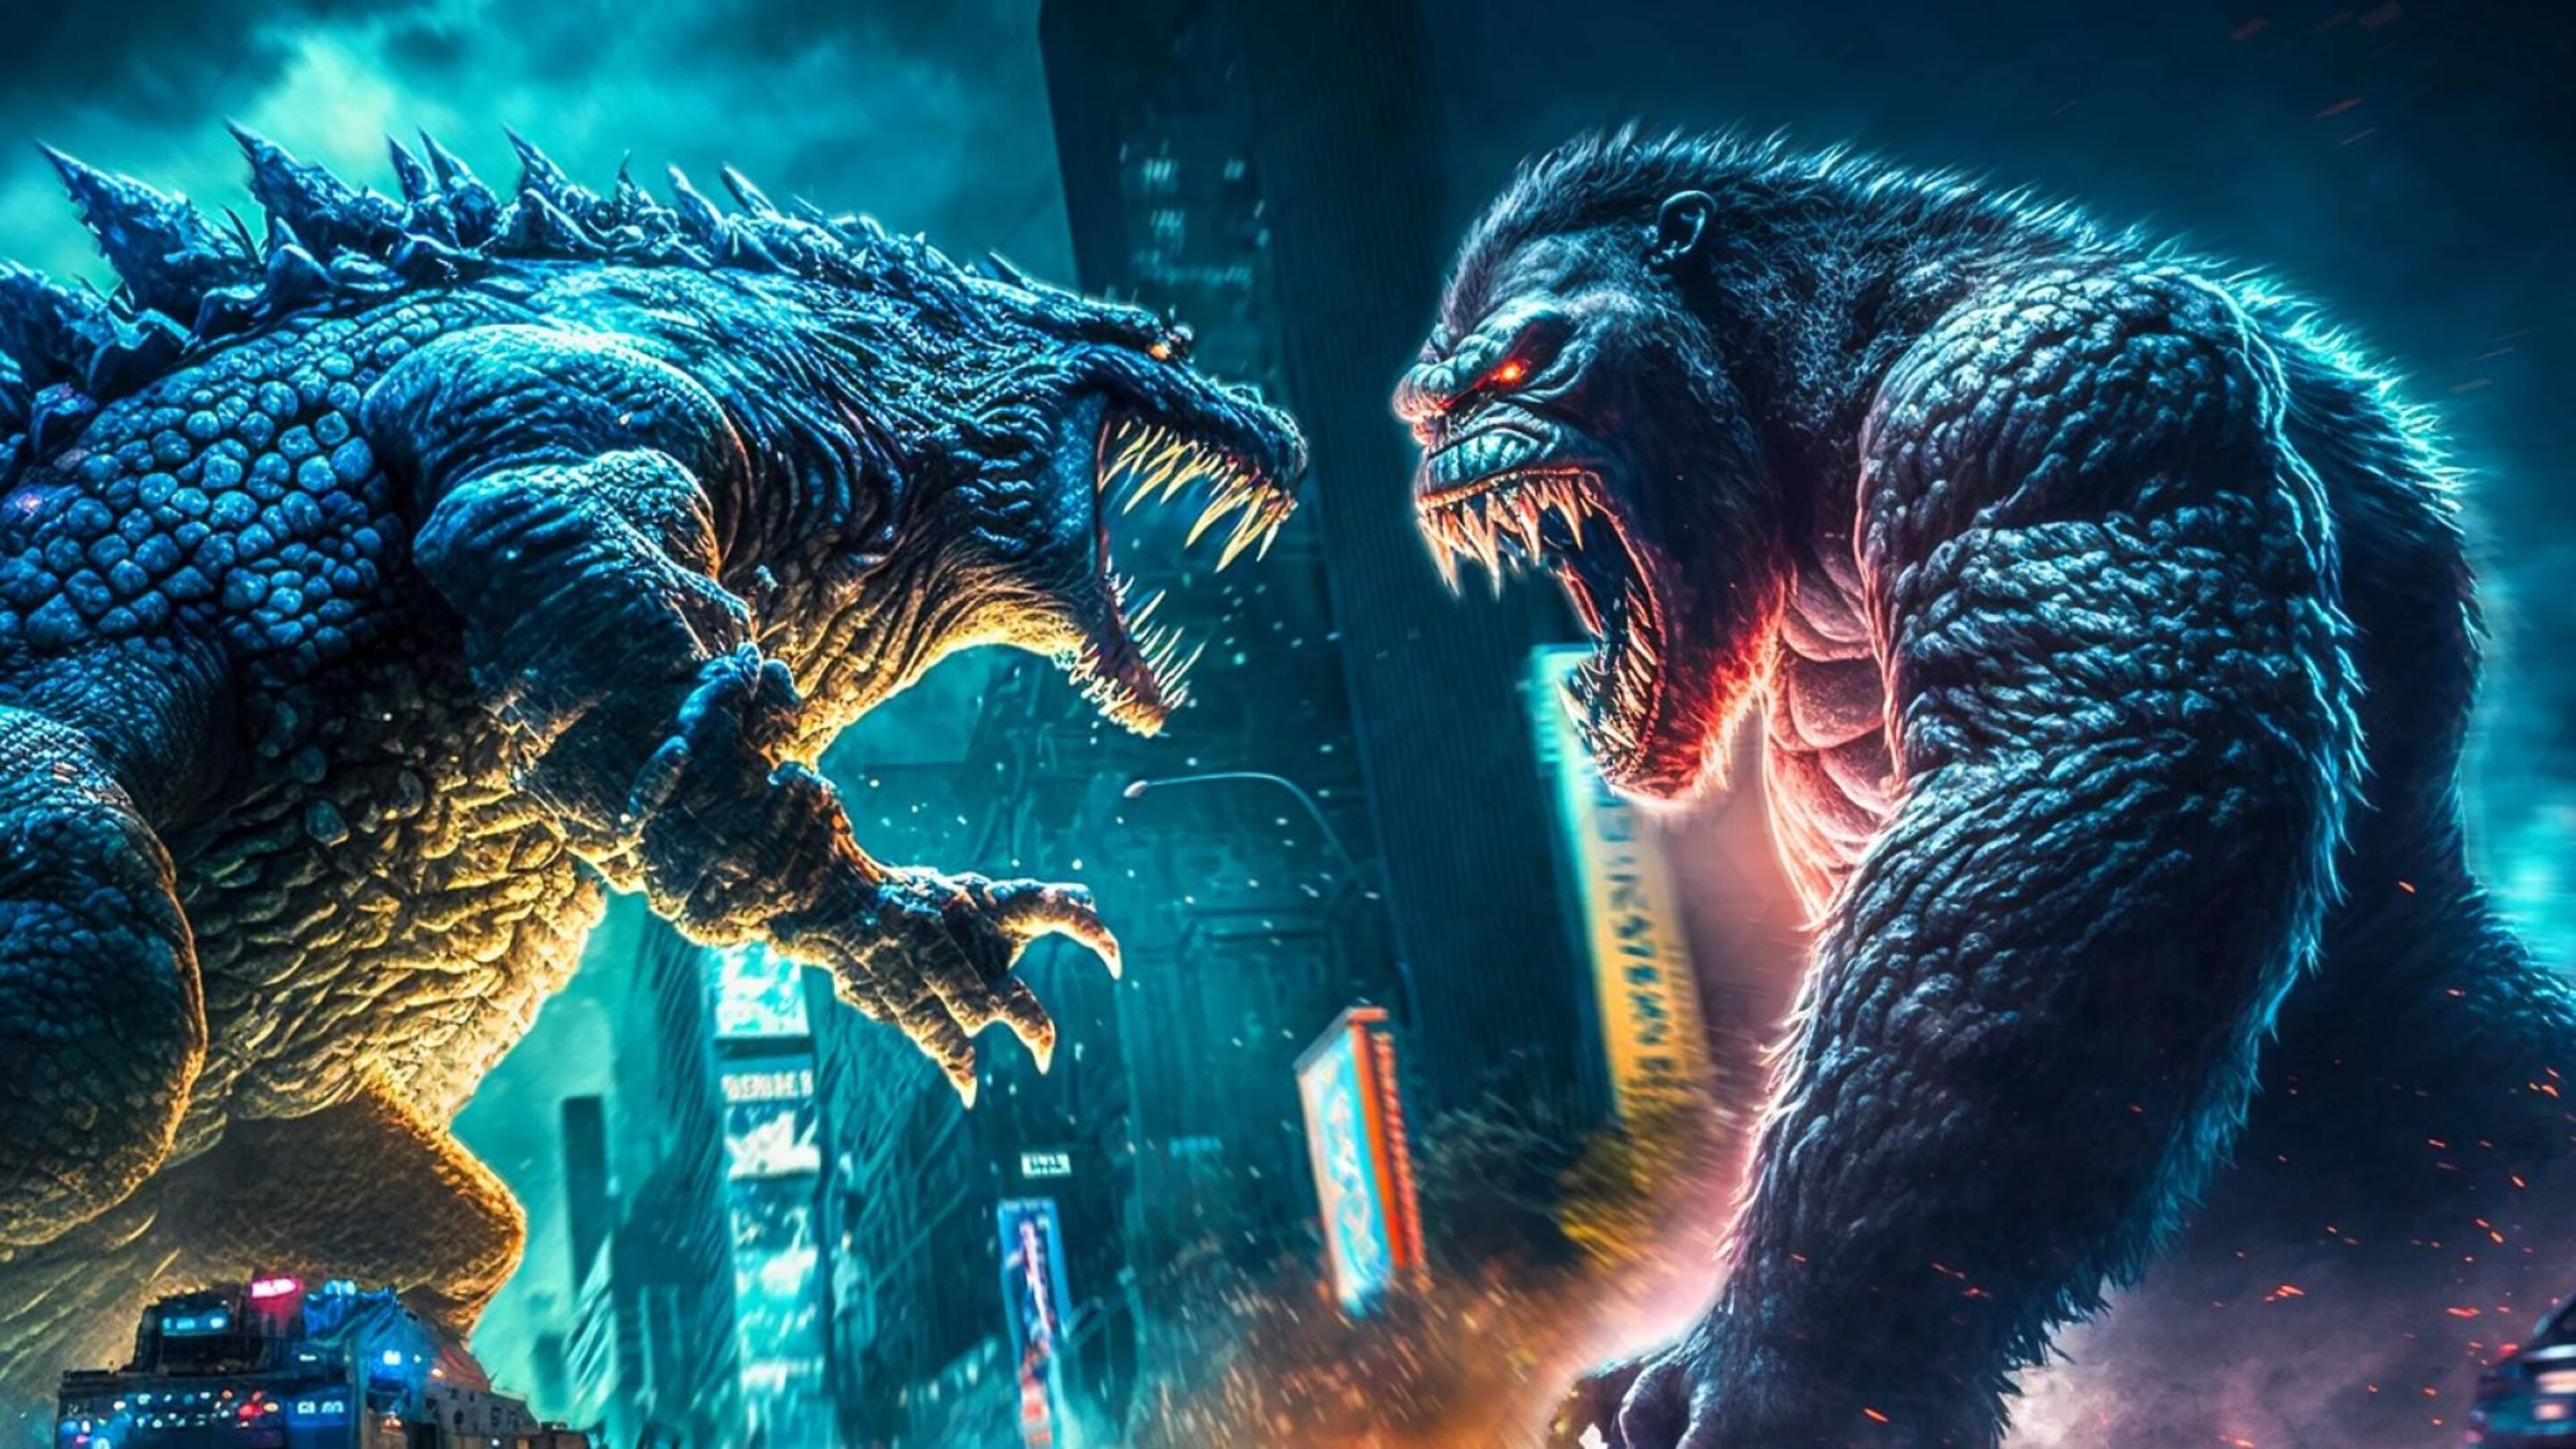 Kong se monta encima de Godzilla en este nuevo clip loco de Godzilla y